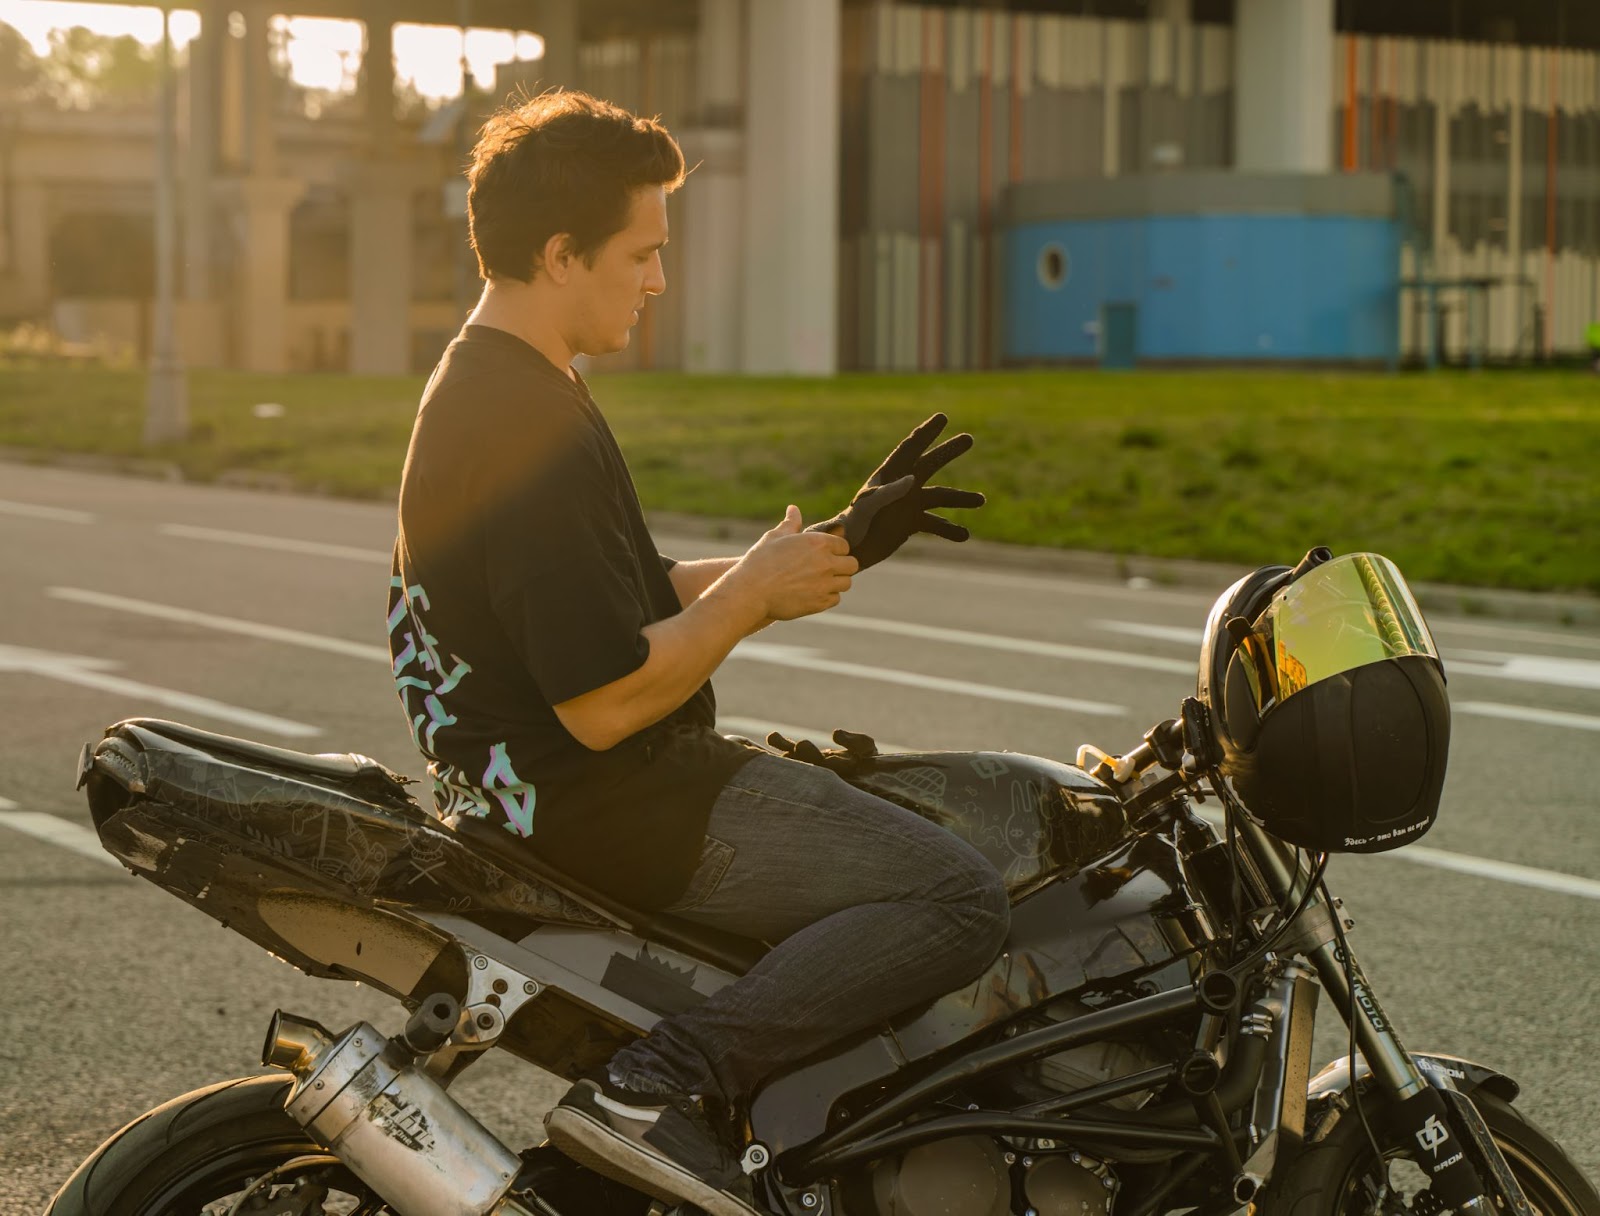 Homem sentado na moto colocando luva
